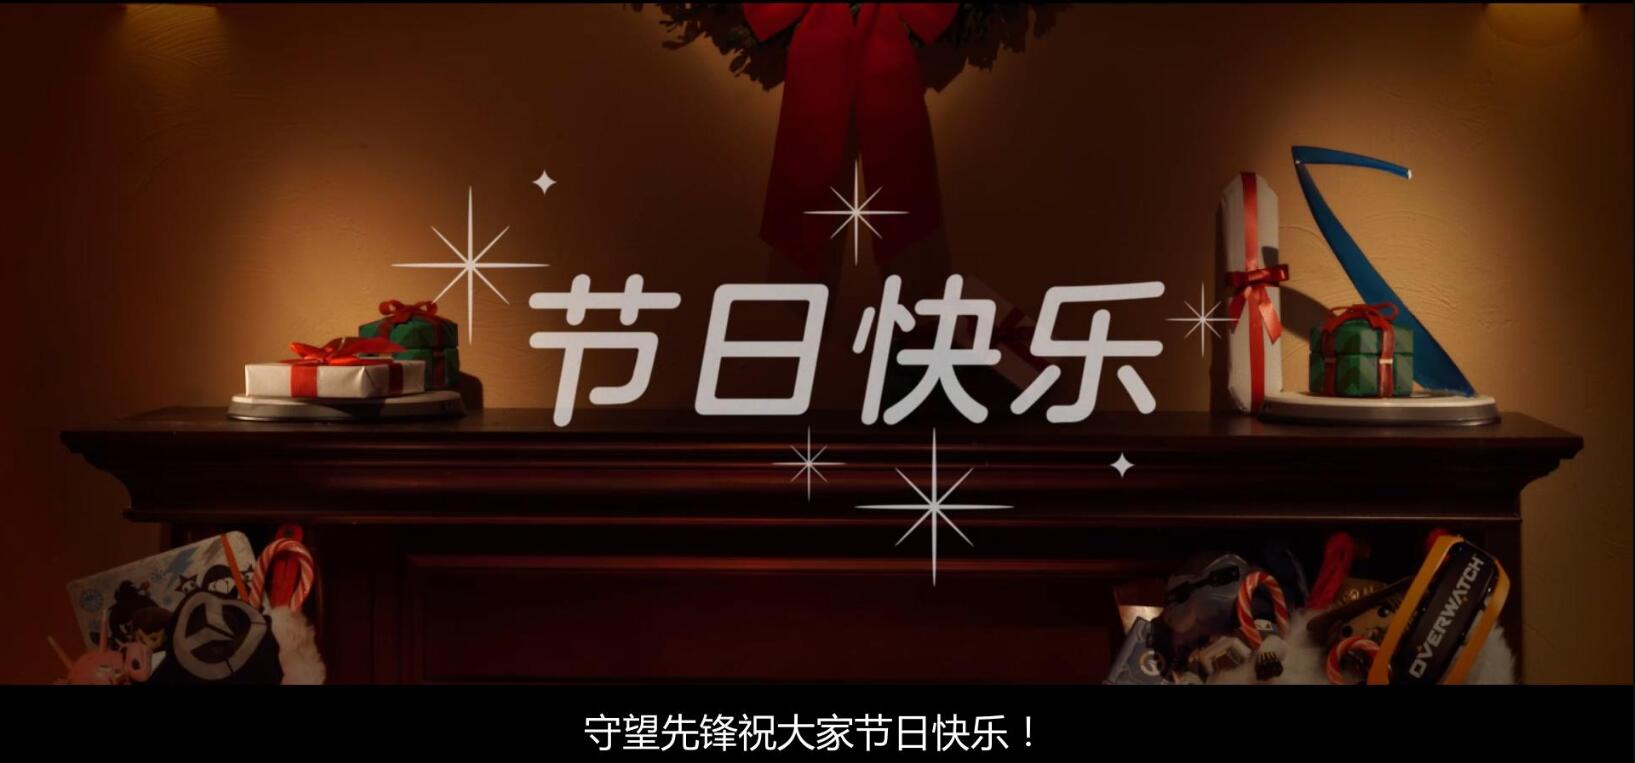 OW圣诞定格动画“饼干先锋”幕后花絮 不愧暴雪制片厂